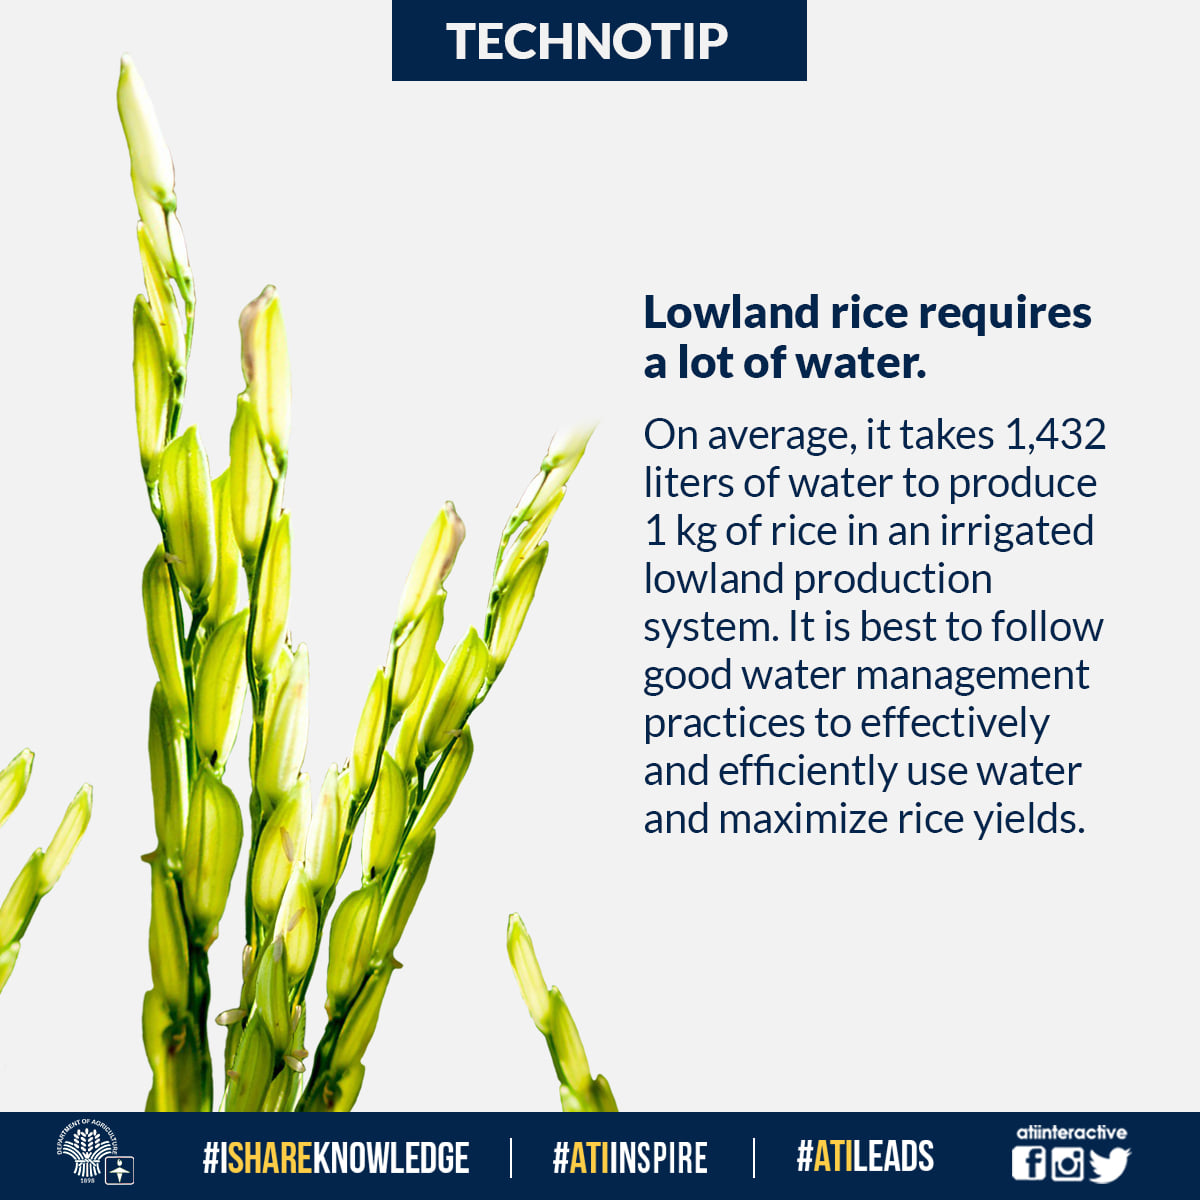 Lowland rice